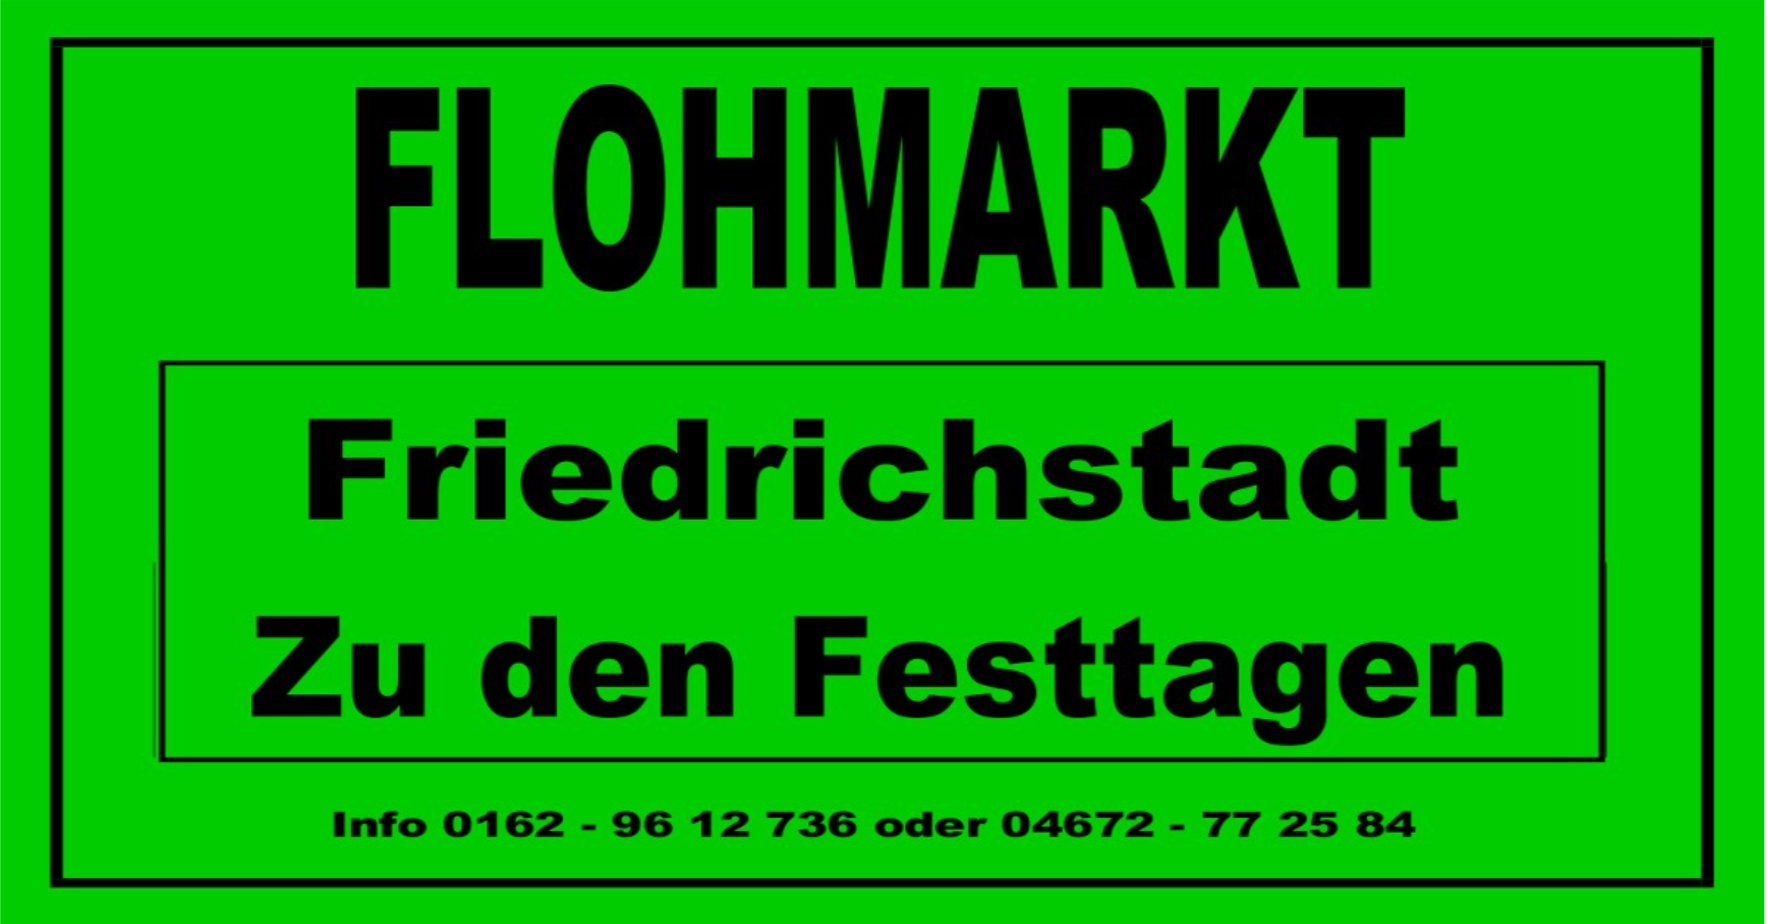 You are currently viewing Flohmarkt Friedrichstadt zu den Festtagen